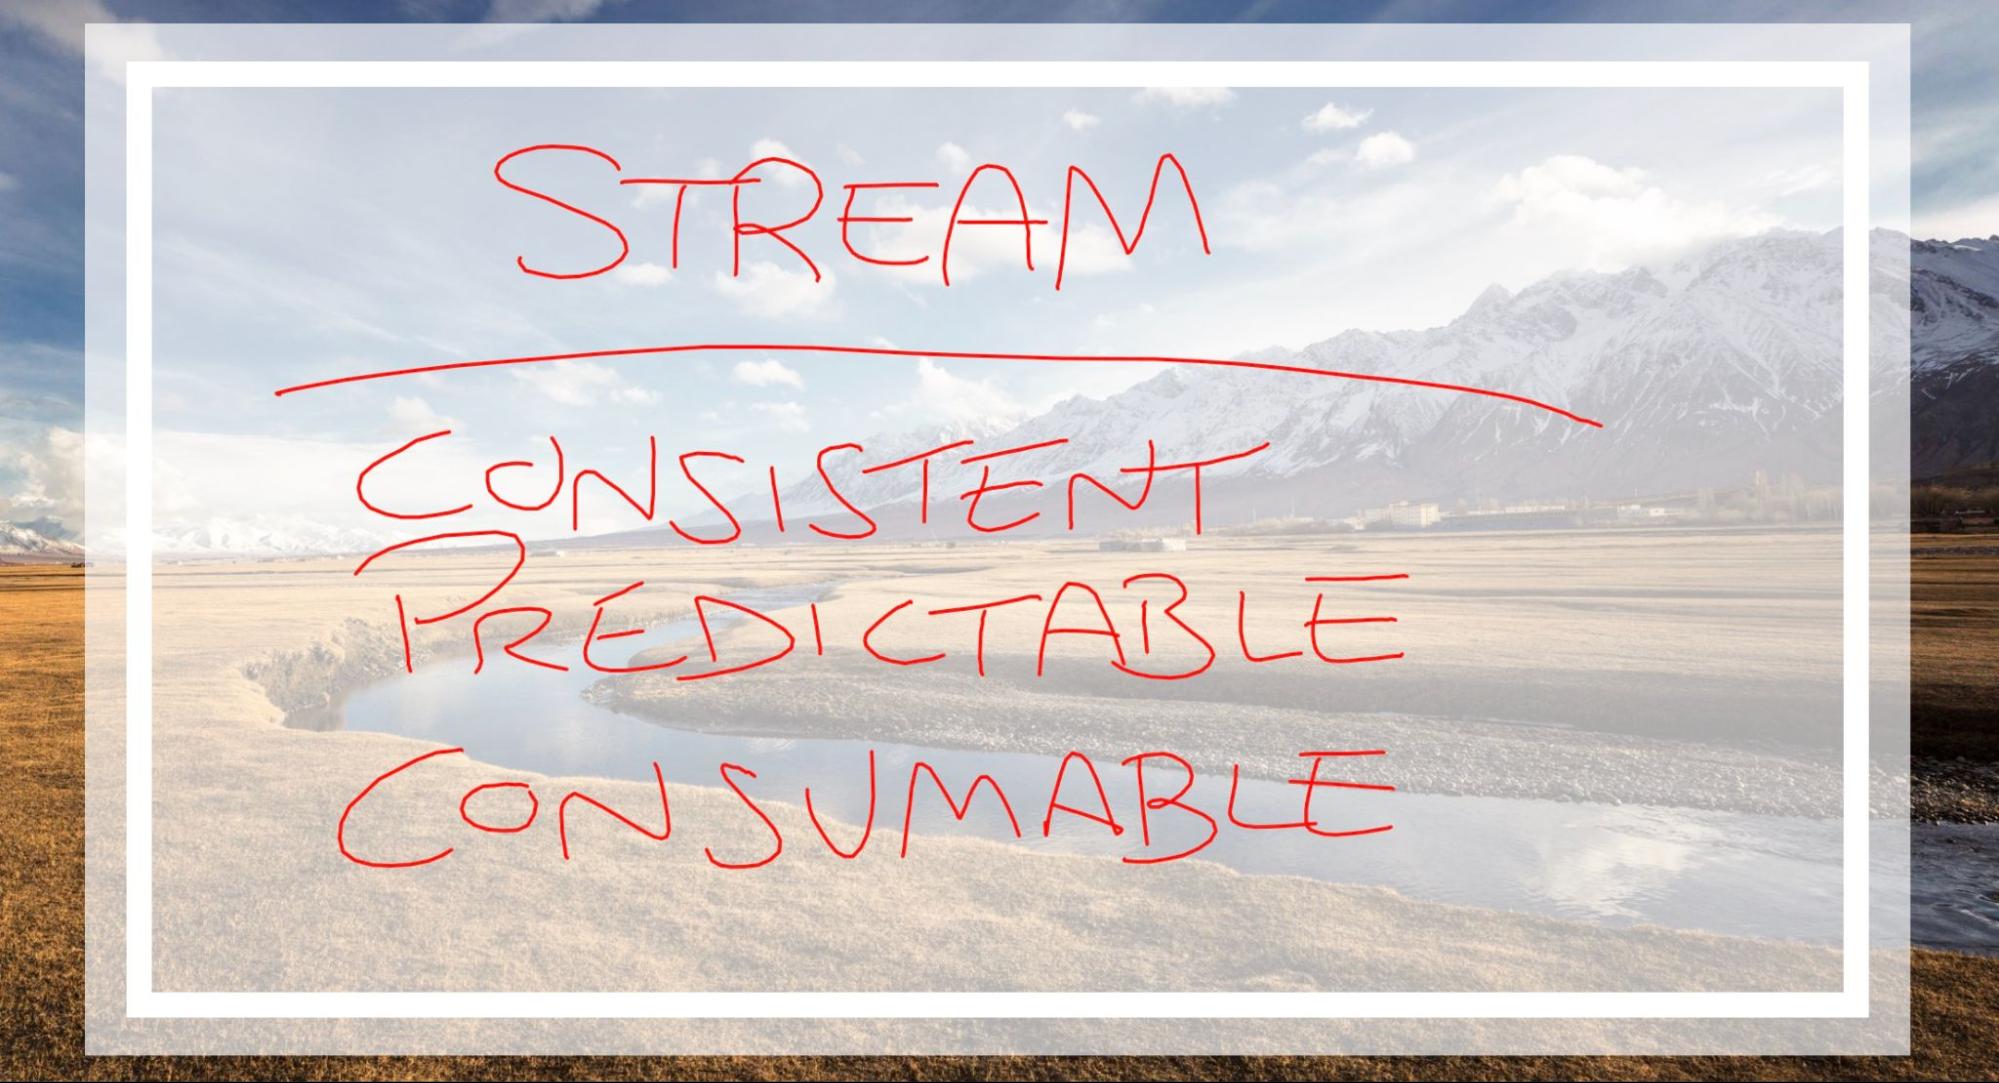 stream - consistent, predictable, consumable